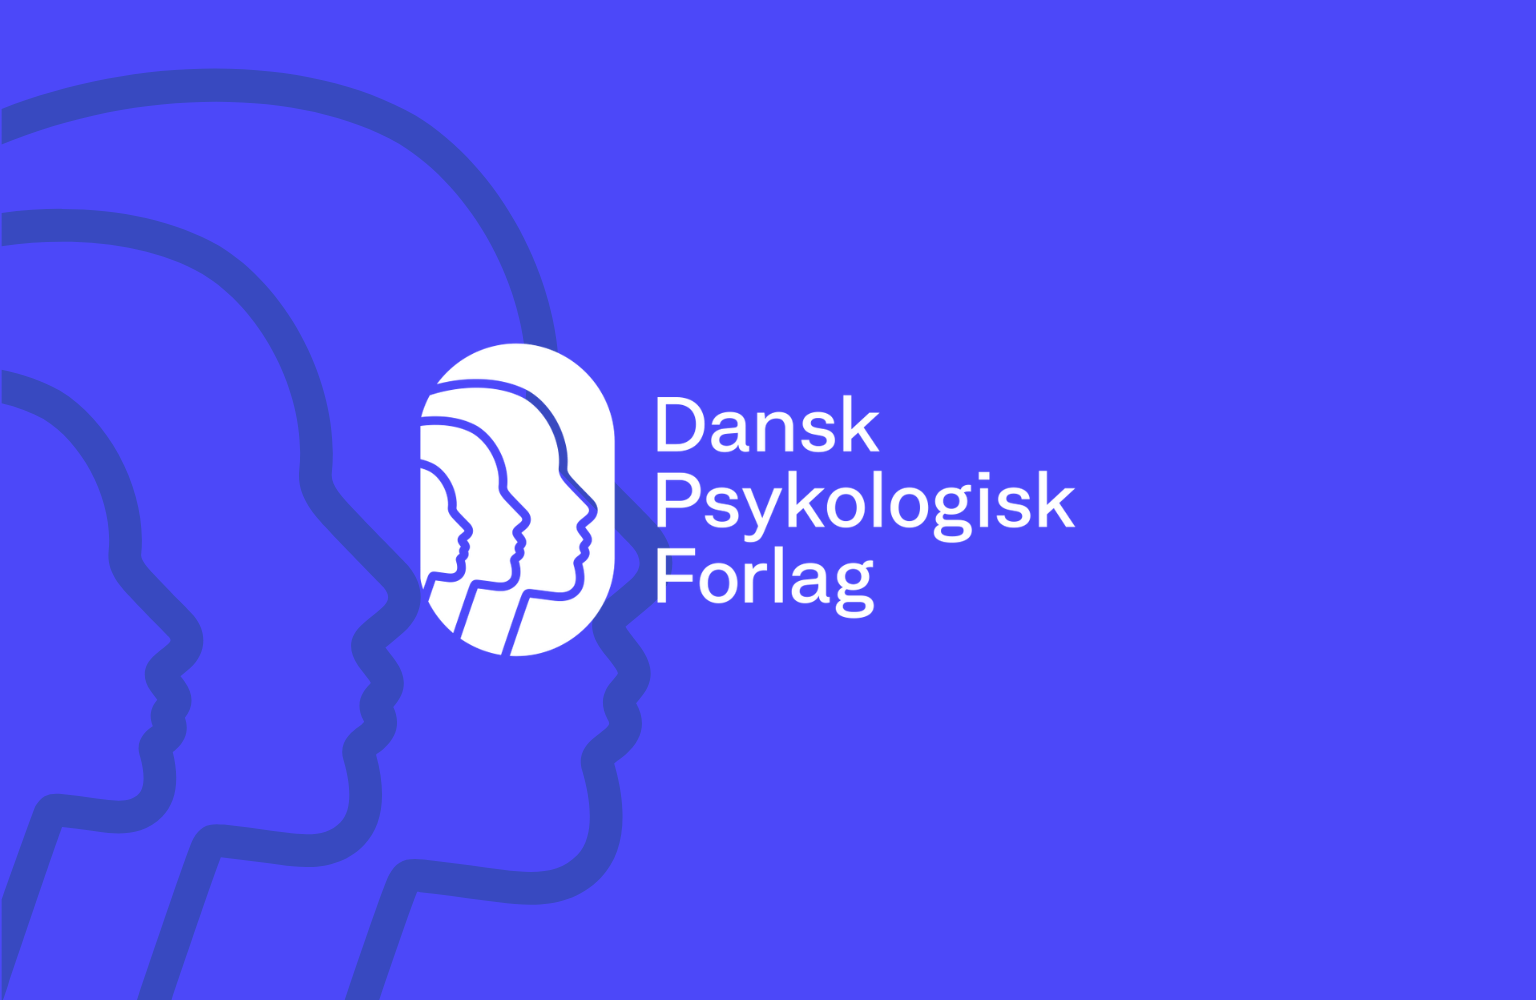 dansk psykologisk forlag logo